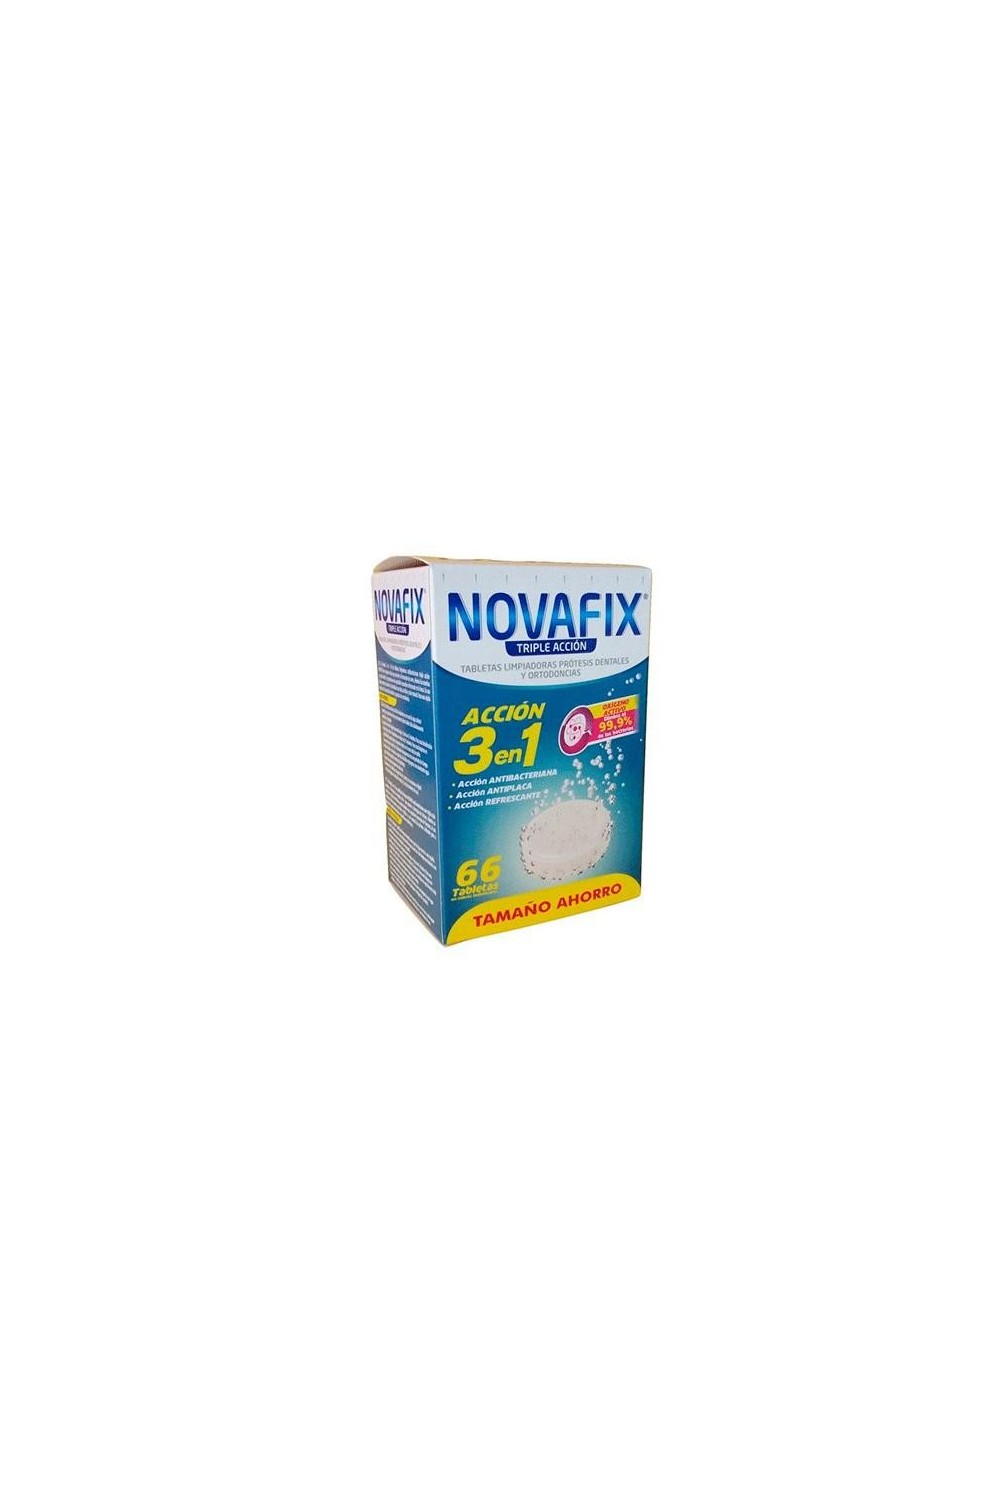 Urgo Novafix Triple Action Tablets 66U